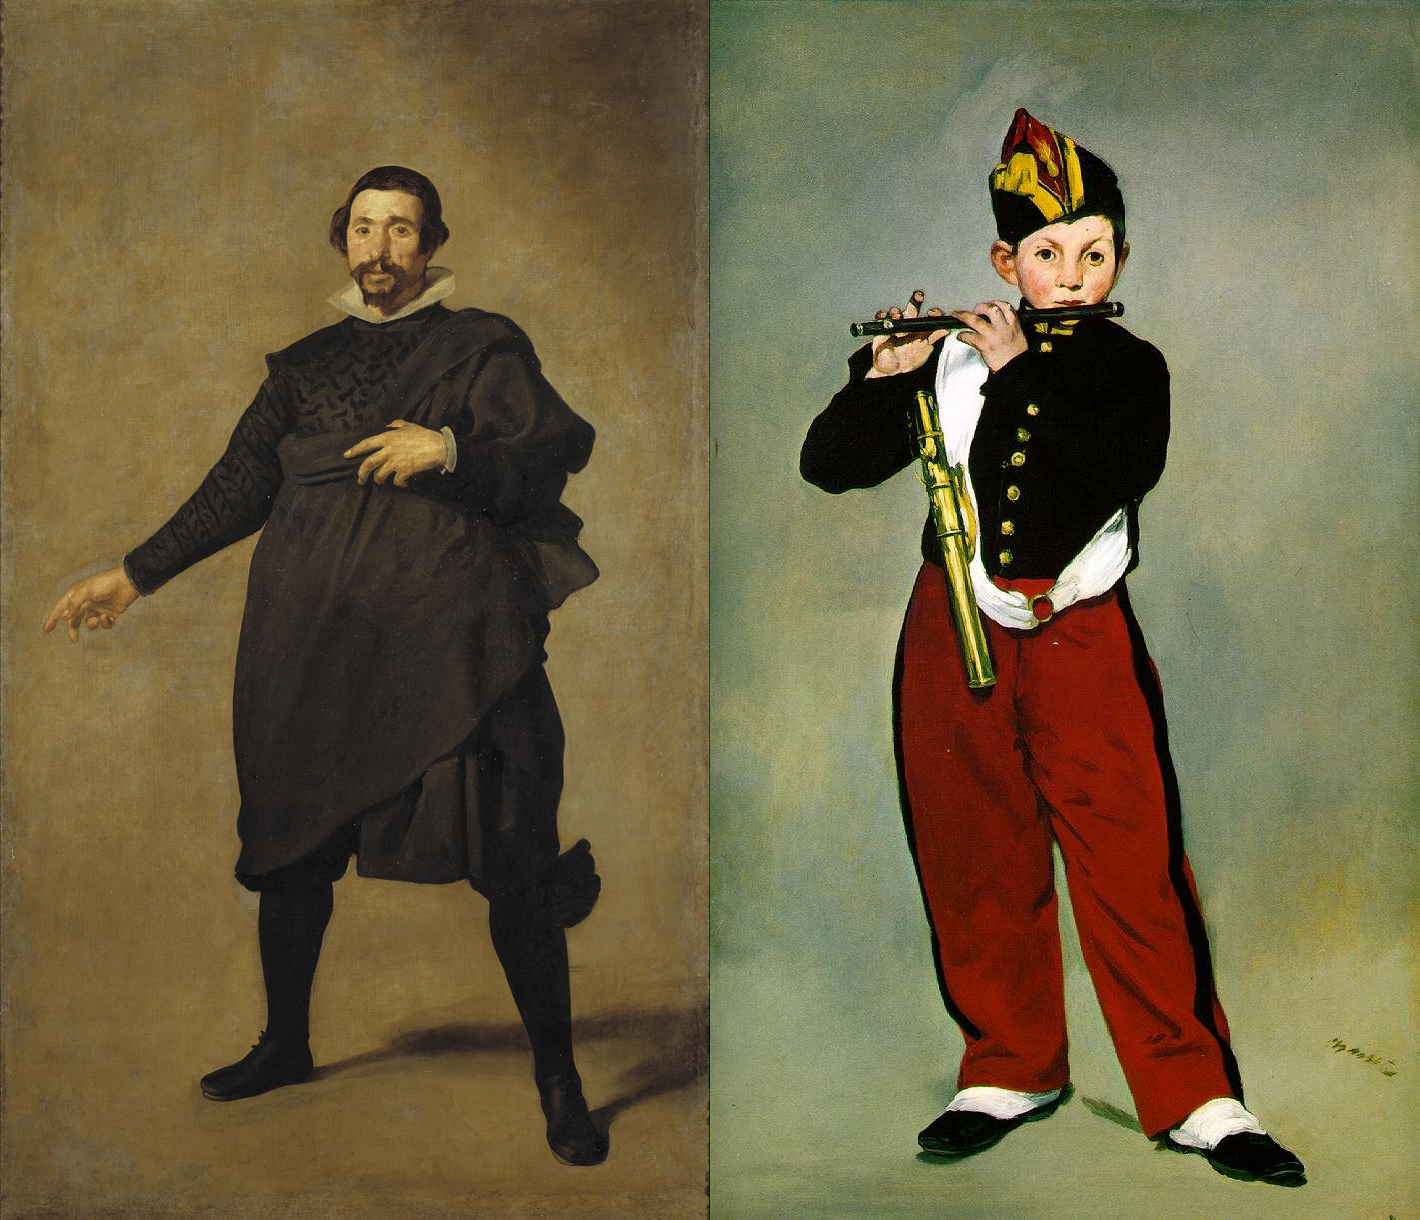 Comparación entre "El flaustista" de Manet y "Pedro de Vallalodid" de Velázquez.